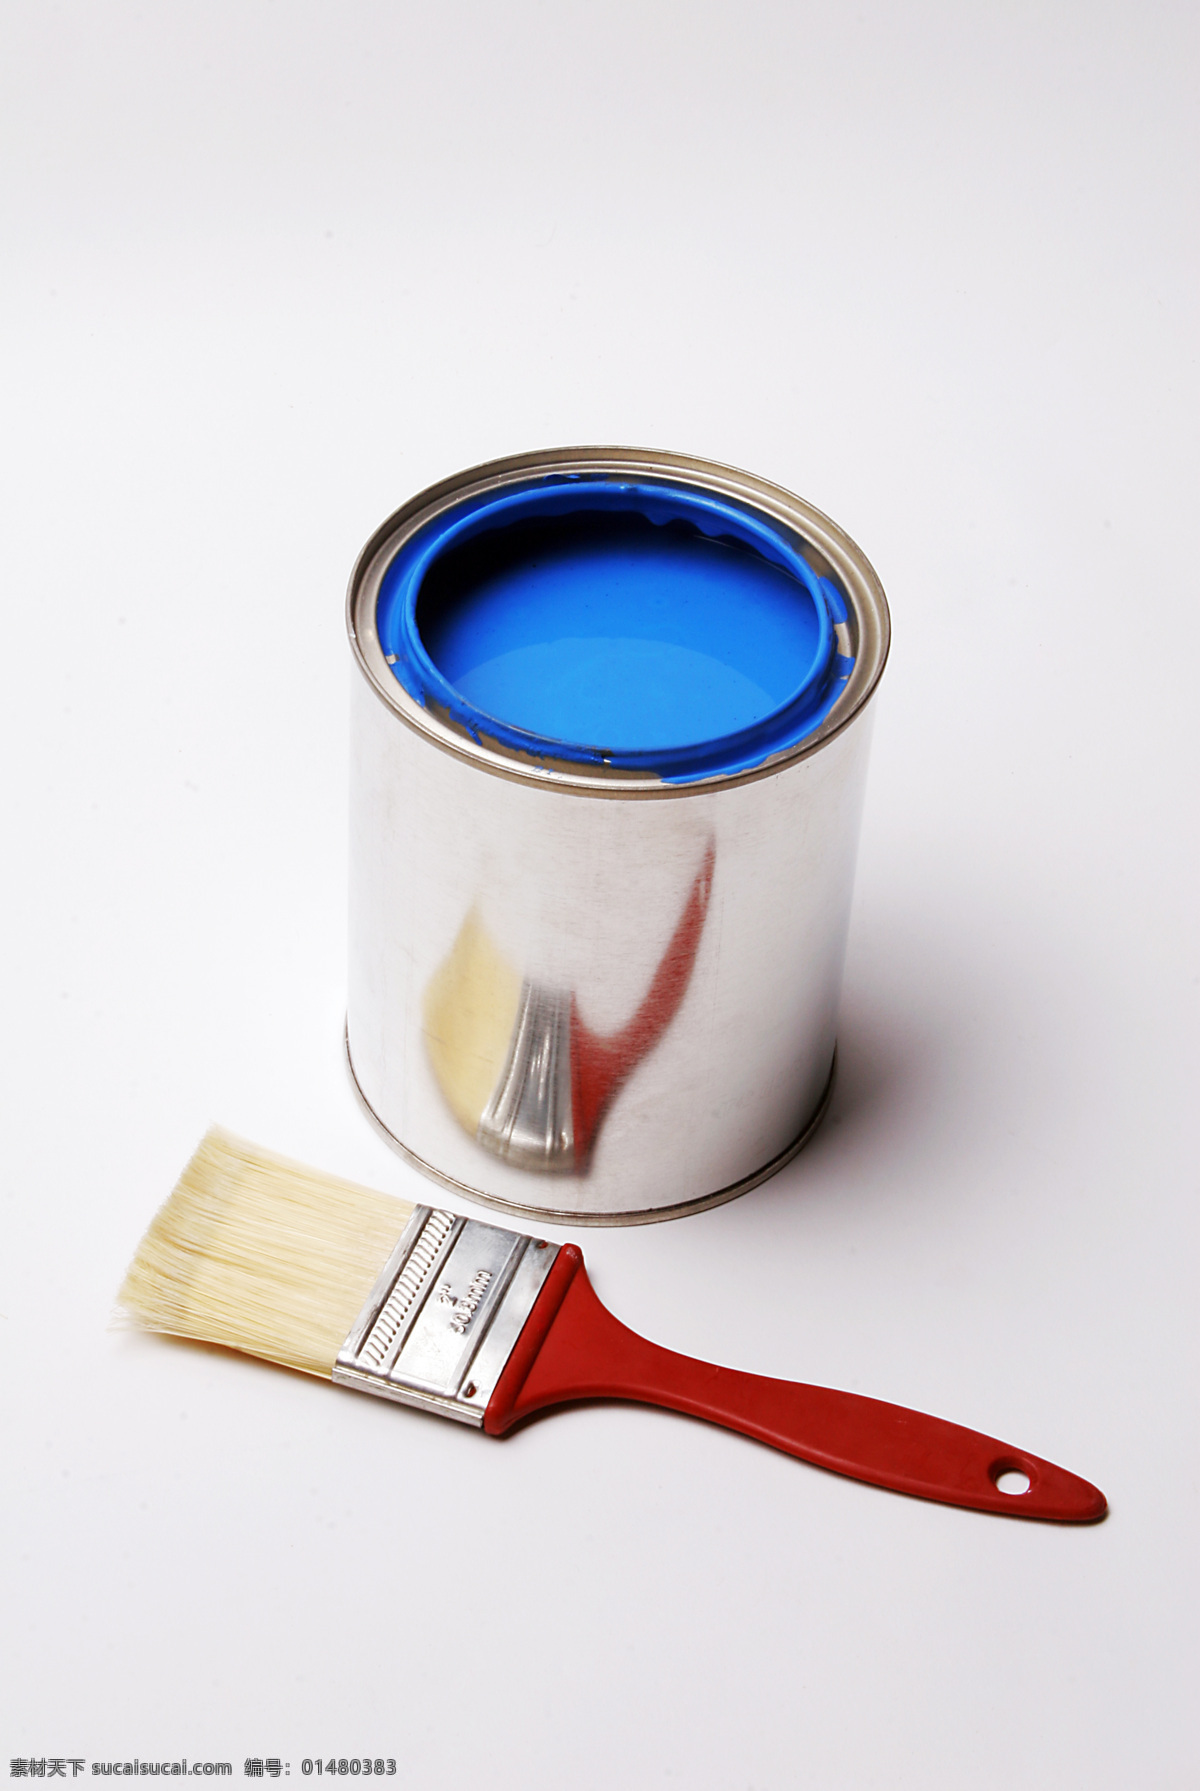 油漆 刷子 房子 装修 工作 色谱 其他类别 生活百科